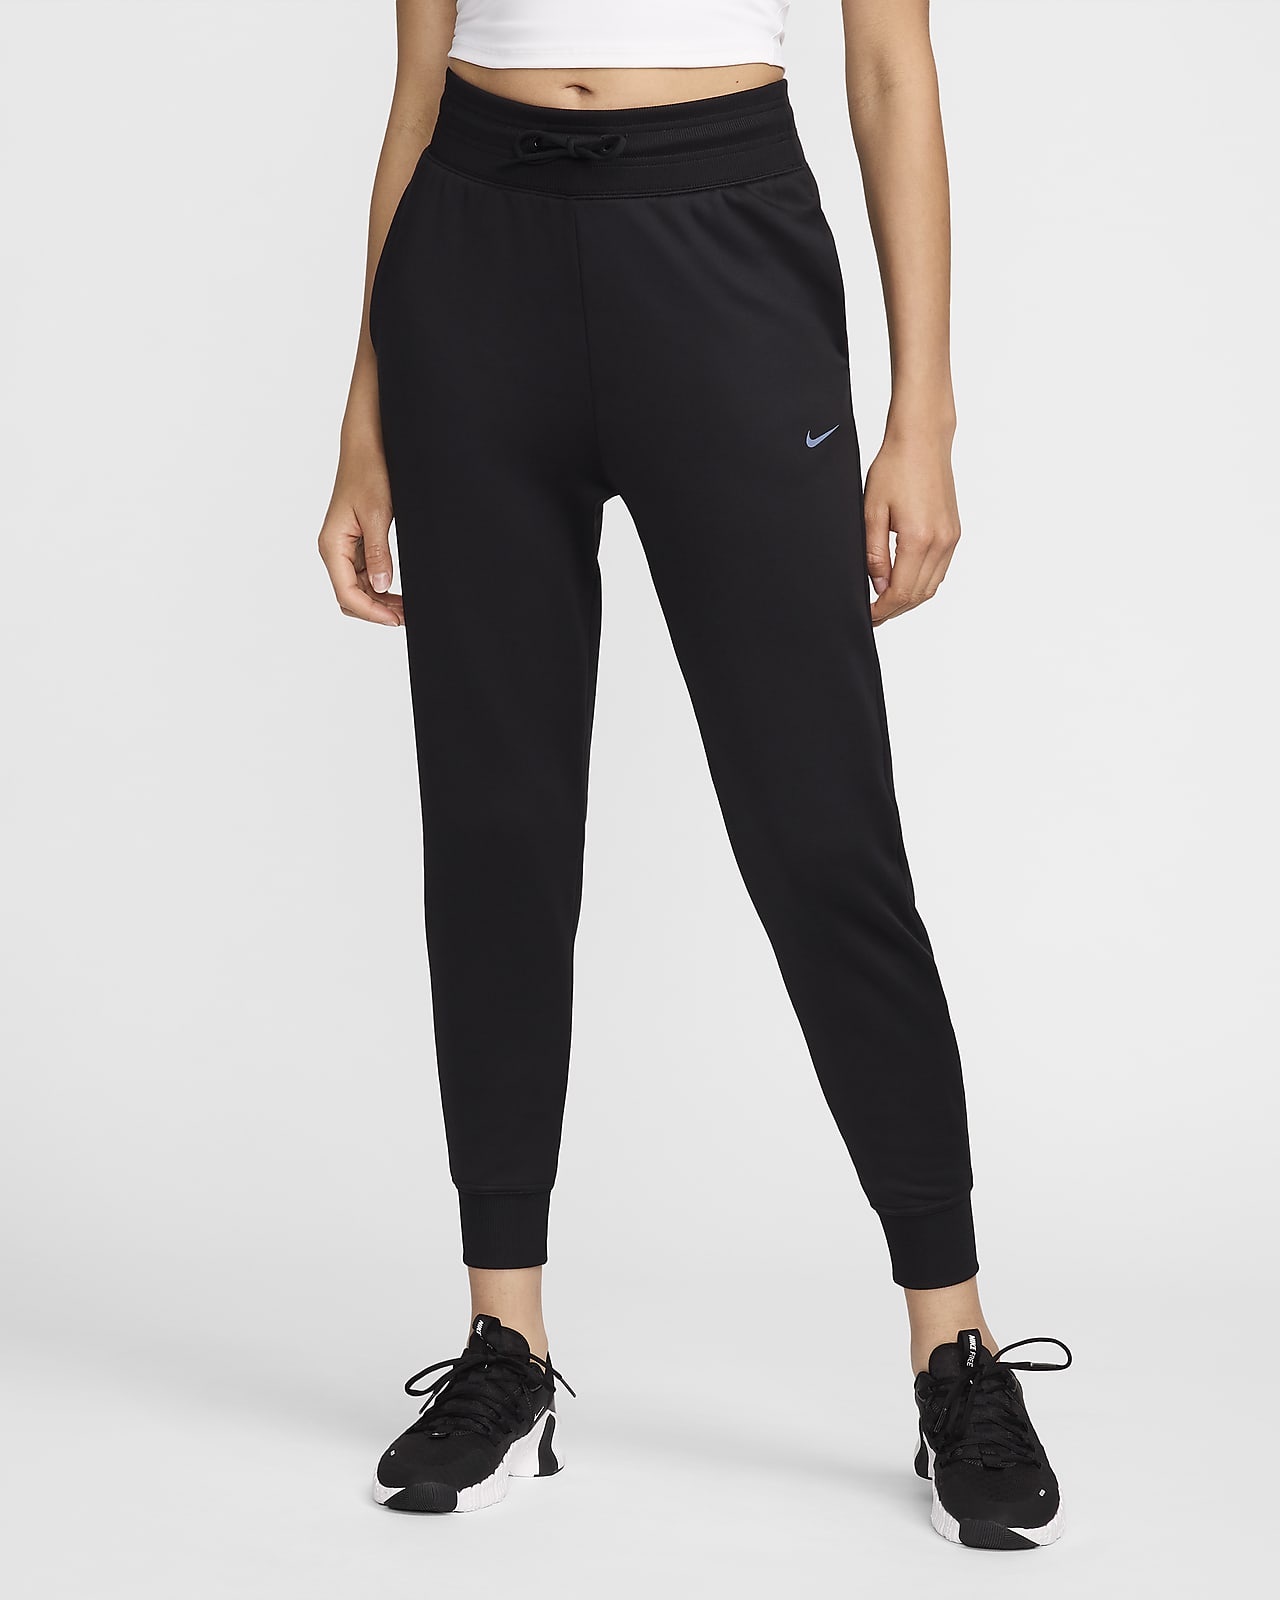 New NIKE Essential Women's Running Pants CJ2259 529 Size MEDIUM Slim Fit $75